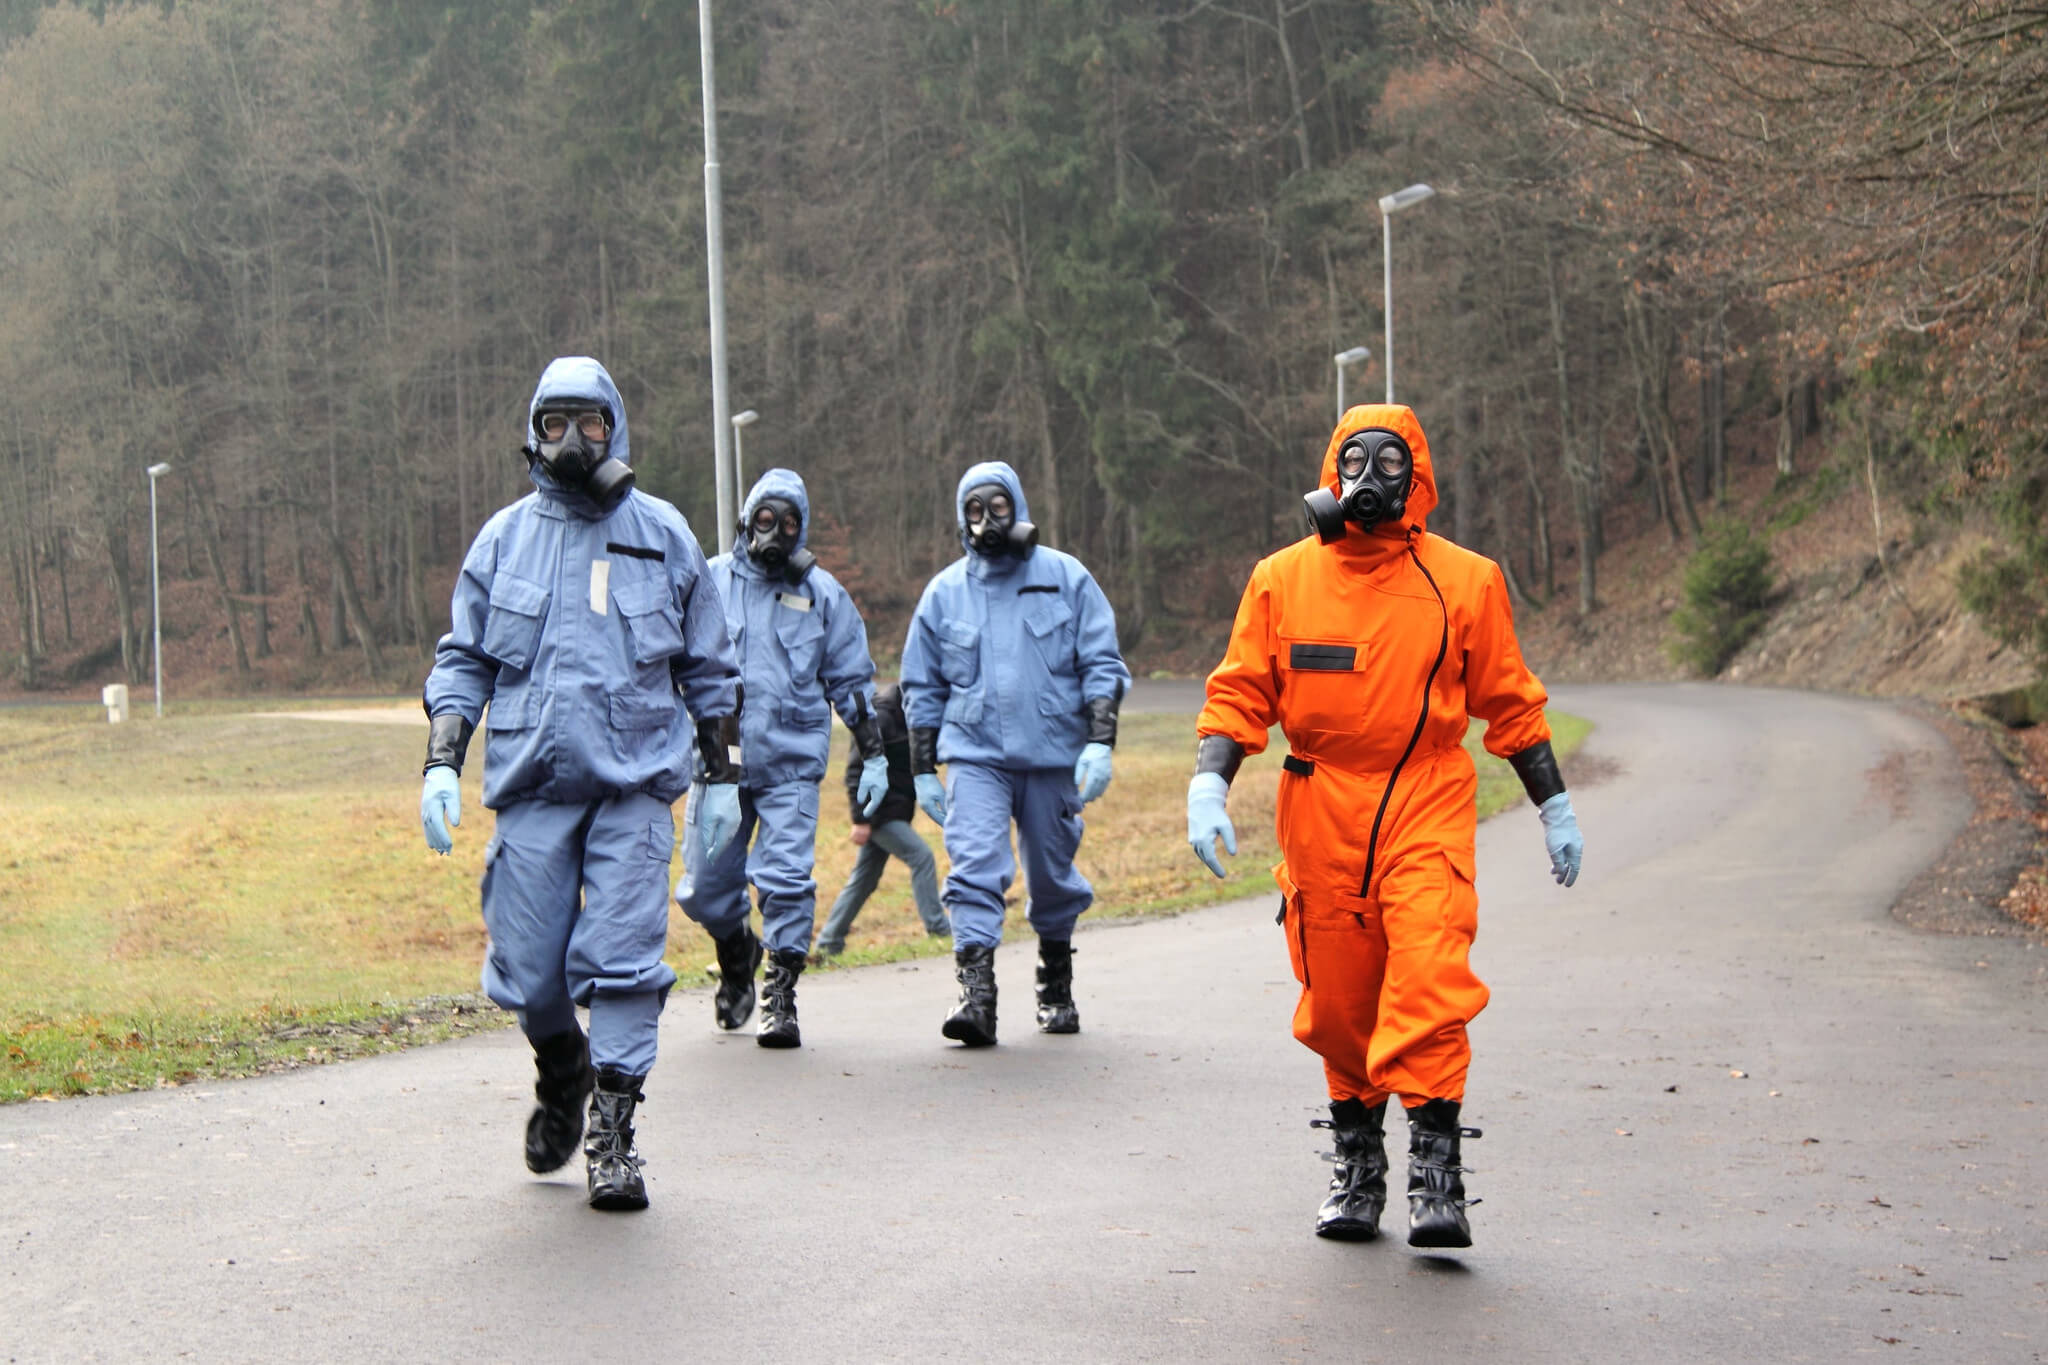 VanderBruggen-OPCW-onderzoekers tijdens een training in Tsjechië in 2009. OPCW.jpg